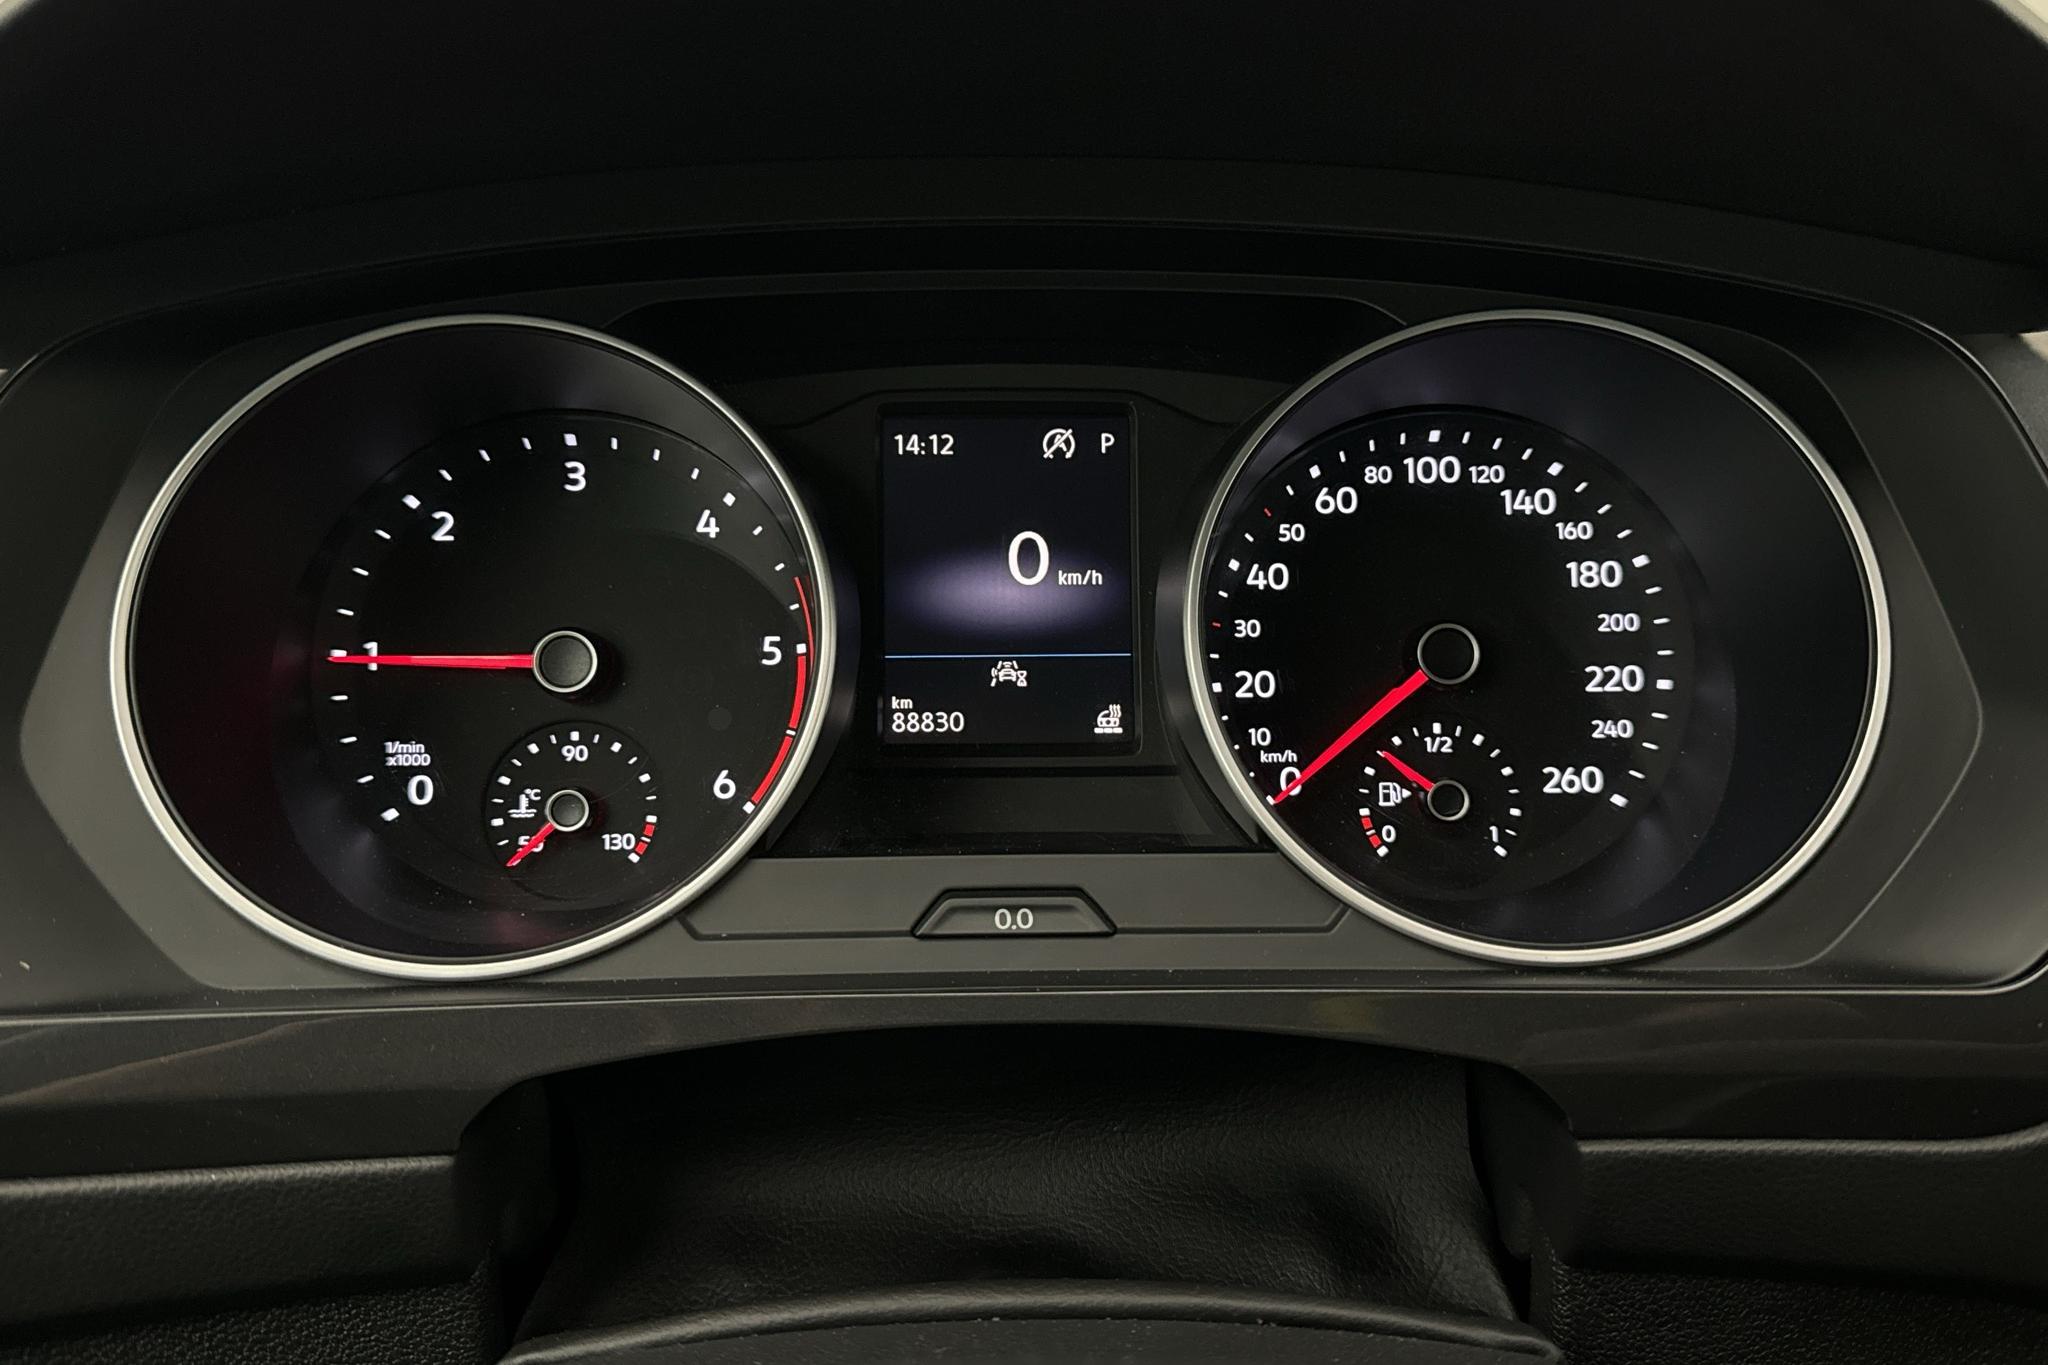 VW Tiguan 2.0 TDI 4MOTION (150hk) - 88 830 km - Automatyczna - biały - 2021